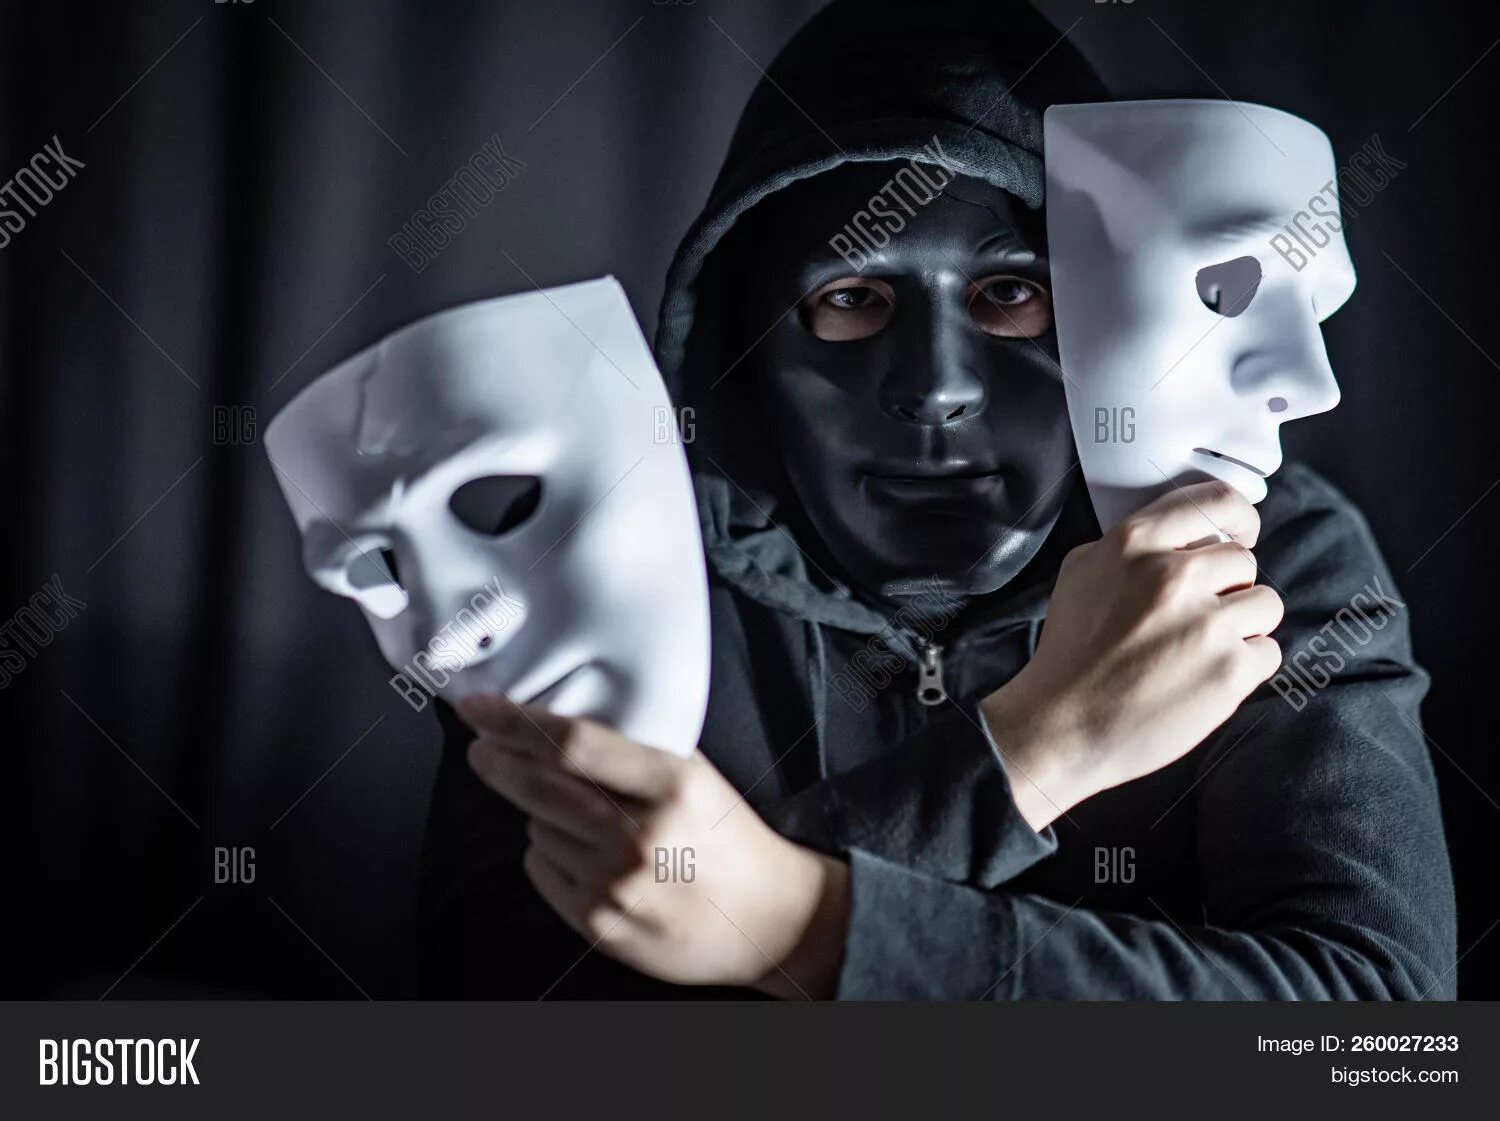 Где будут снимать маску. Человек в маске. Человек надевает маску. Человек в театральной маске. Человек в белой маске.